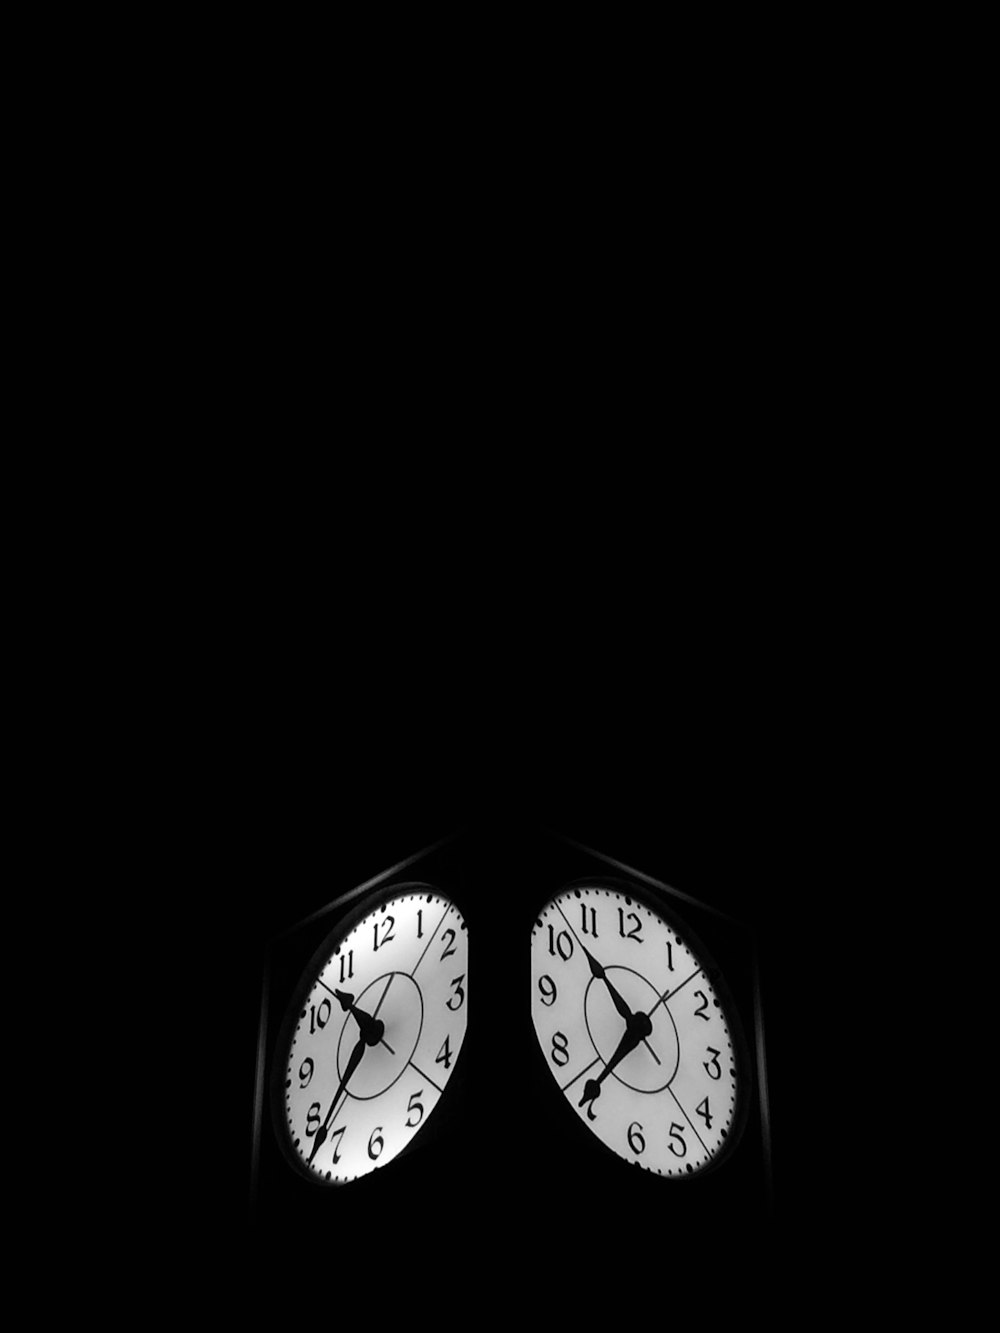 orologio nero che mostra 7:52